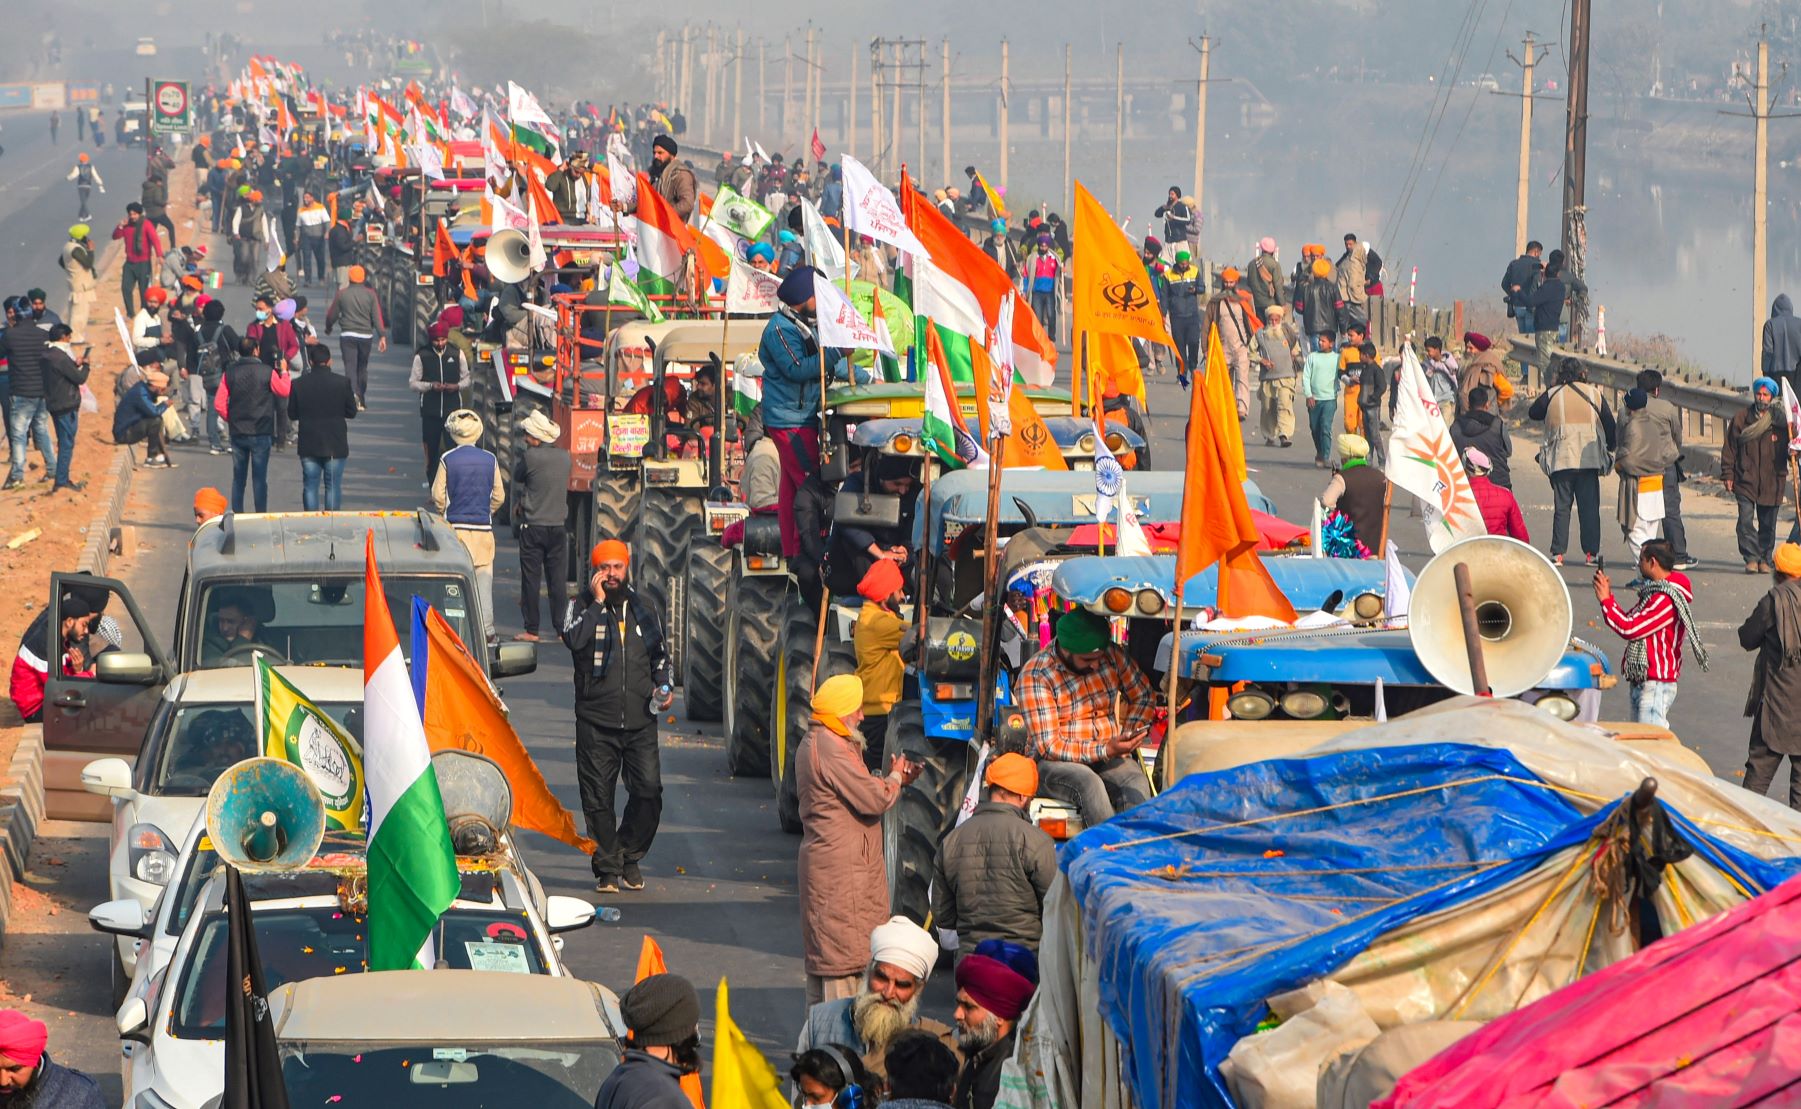 26 जनवरी को दिल्ली के जीटी करनाल रोड पर लगी ट्रैक्टरों की कतारें. (फोटो: पीटीआई)